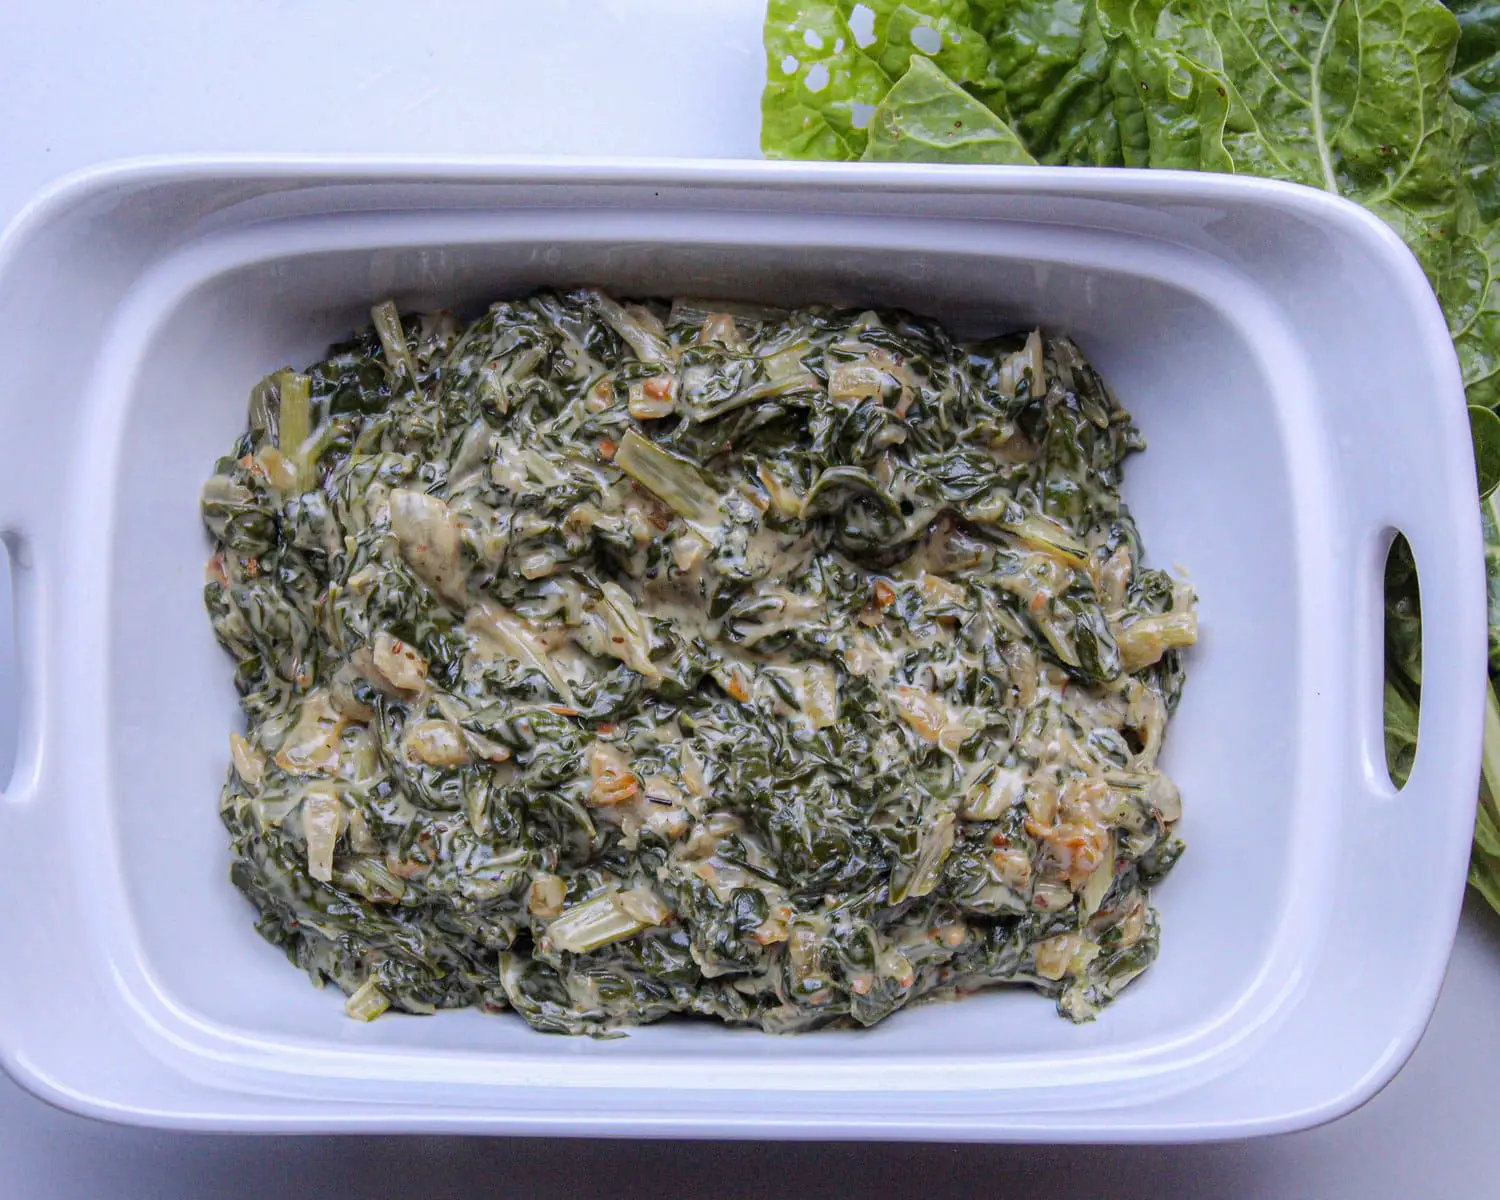 creamed spinach recipe